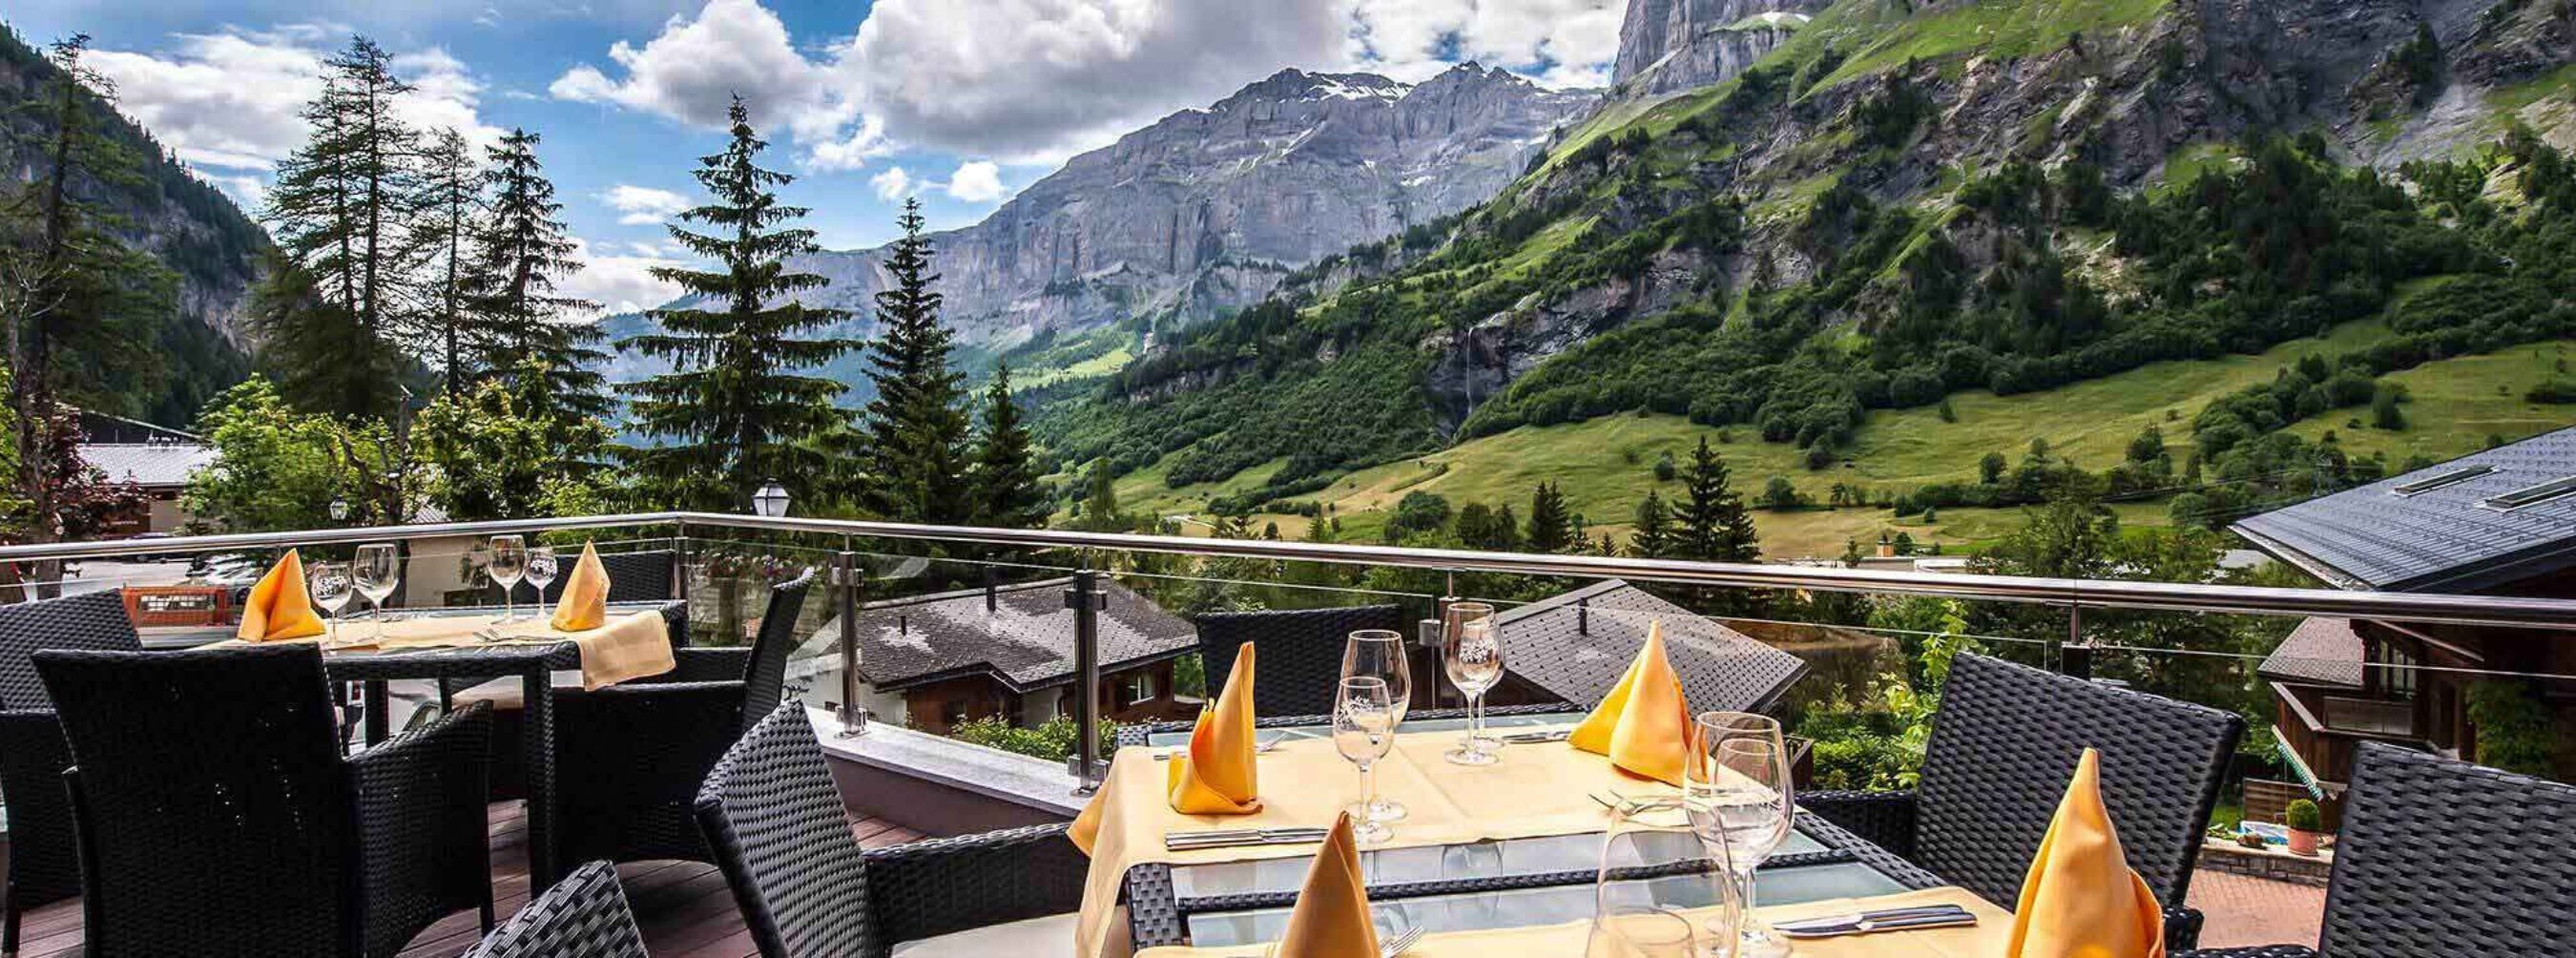 Terrasse mit Aussicht im Gilde Restaurant Waldhaus in Leukerbad Wallis